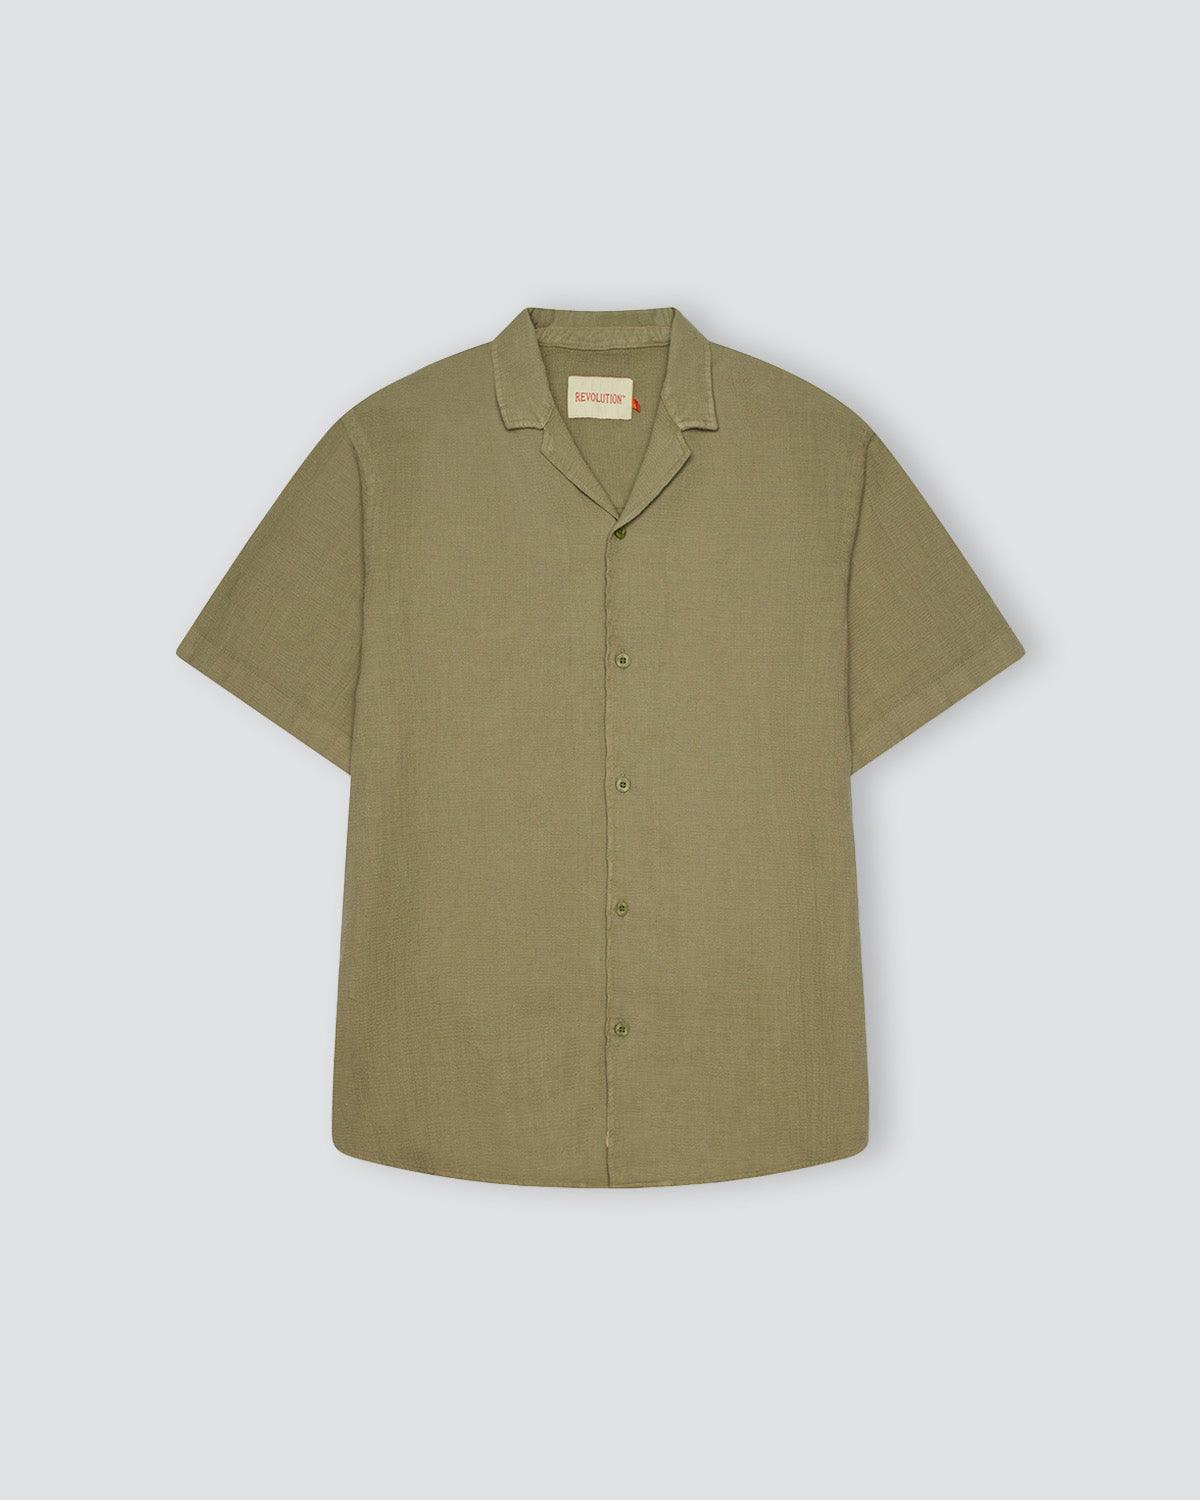 Cuban Shirt 3927 - Light Green - Revolution - Kul og Koks